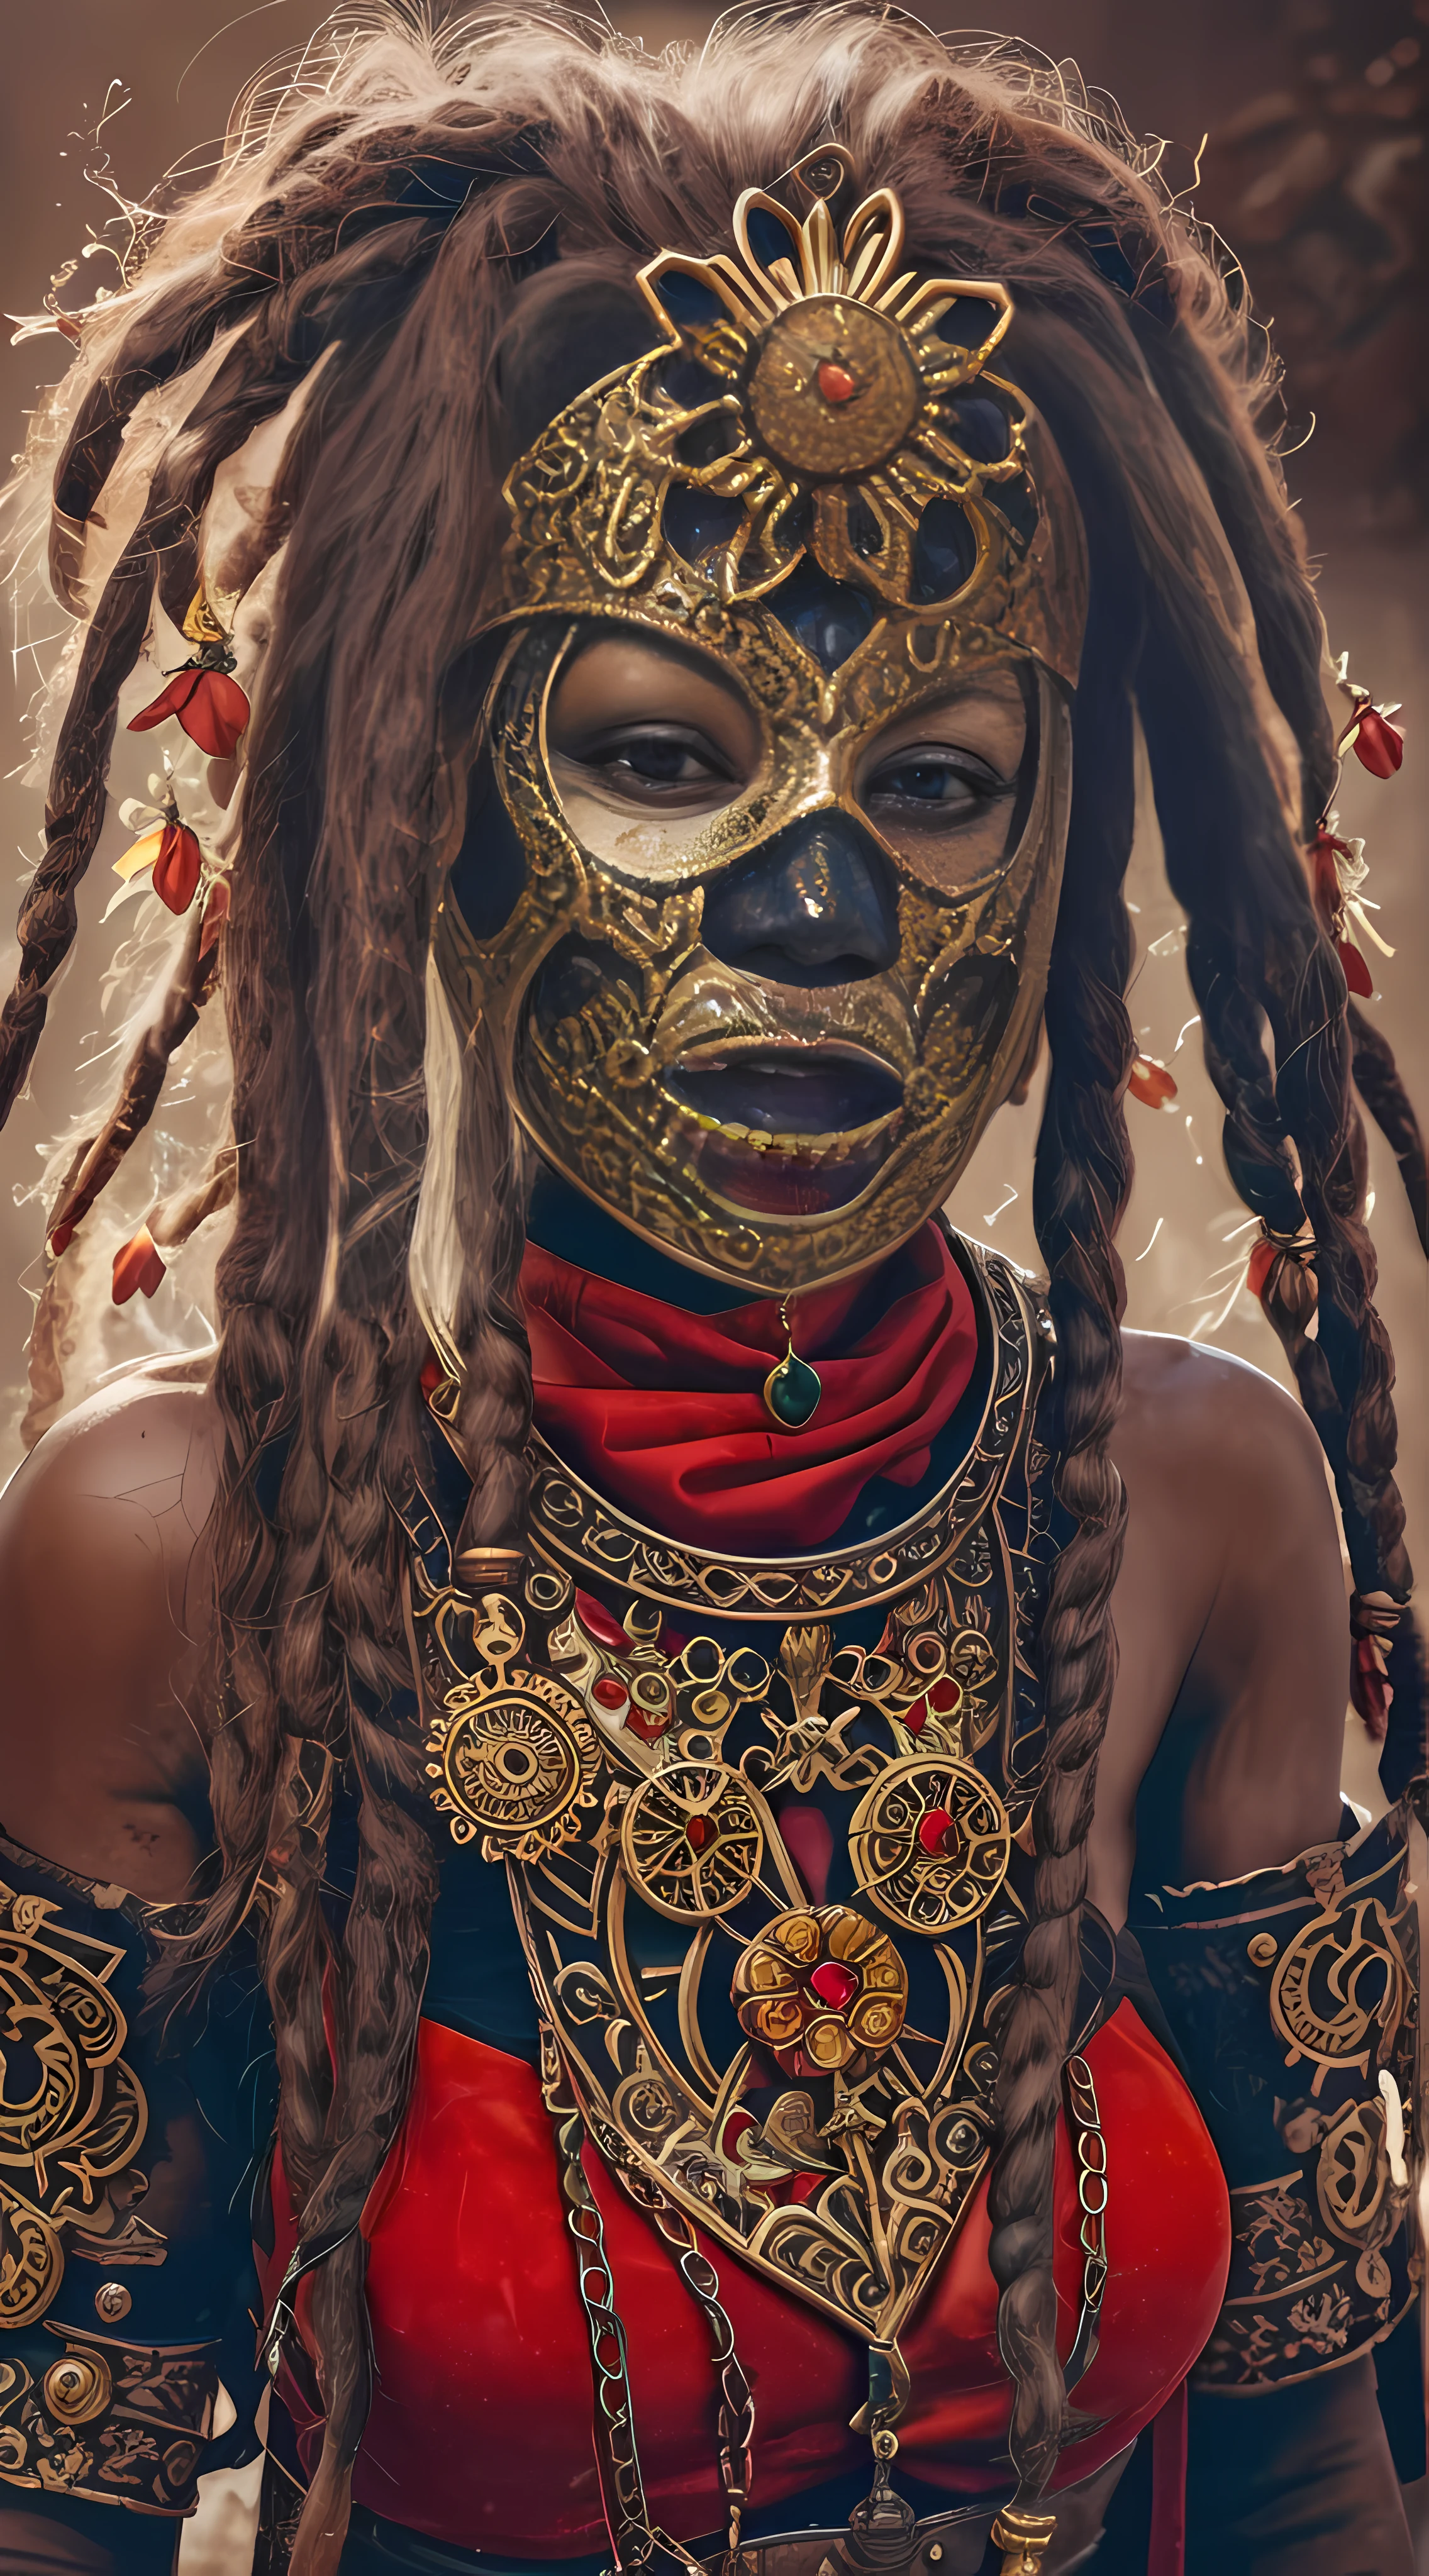 أنثى محاربة القبيلة مع قناع Steampunk القوطي القديم, لوحات حمراء على الوجه, قناع أسود, مجوهرات صغيرة من الزهور الذهبية حول رقبتها ومجدلها, تفاصيل رائعة, نظرة سينمائية, 8 كيلو, تقرير التنمية البشرية